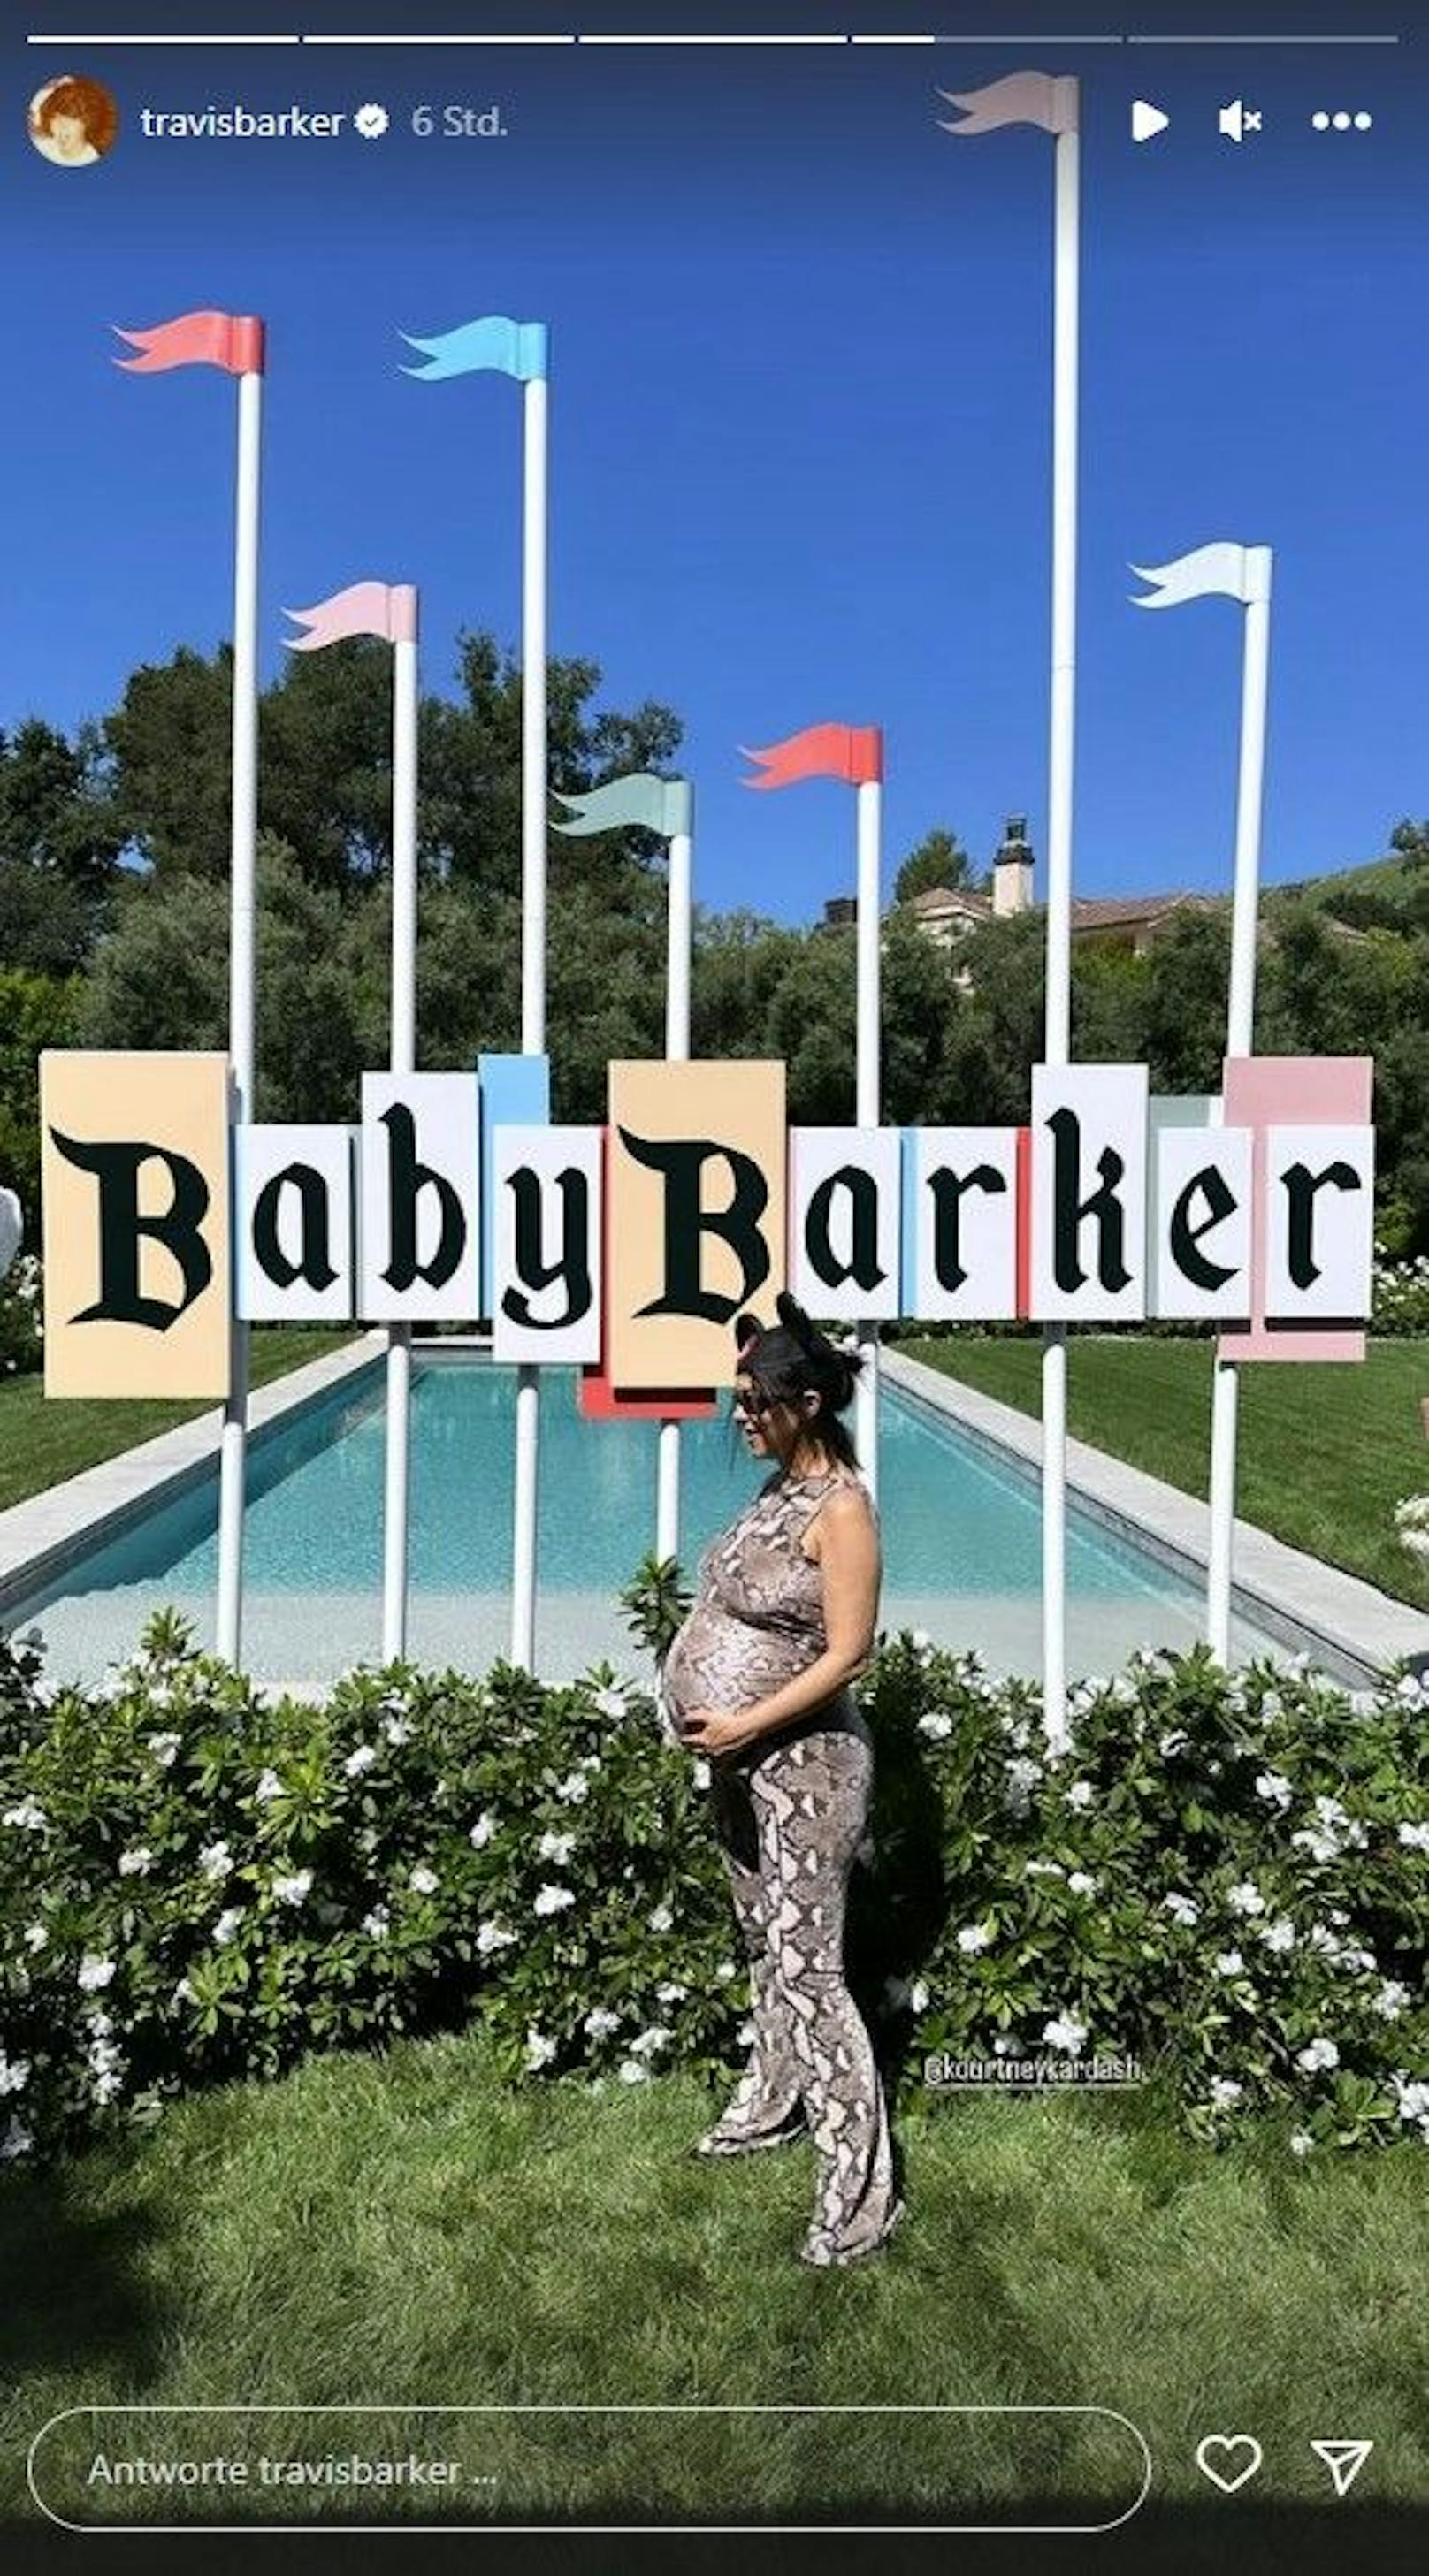 Ganz schön schwanger! Kourtney Kardashian und Travis Barker luden ihre Liebsten zu einer großen Disney-Party für ihr ungeborenes Kind ein.